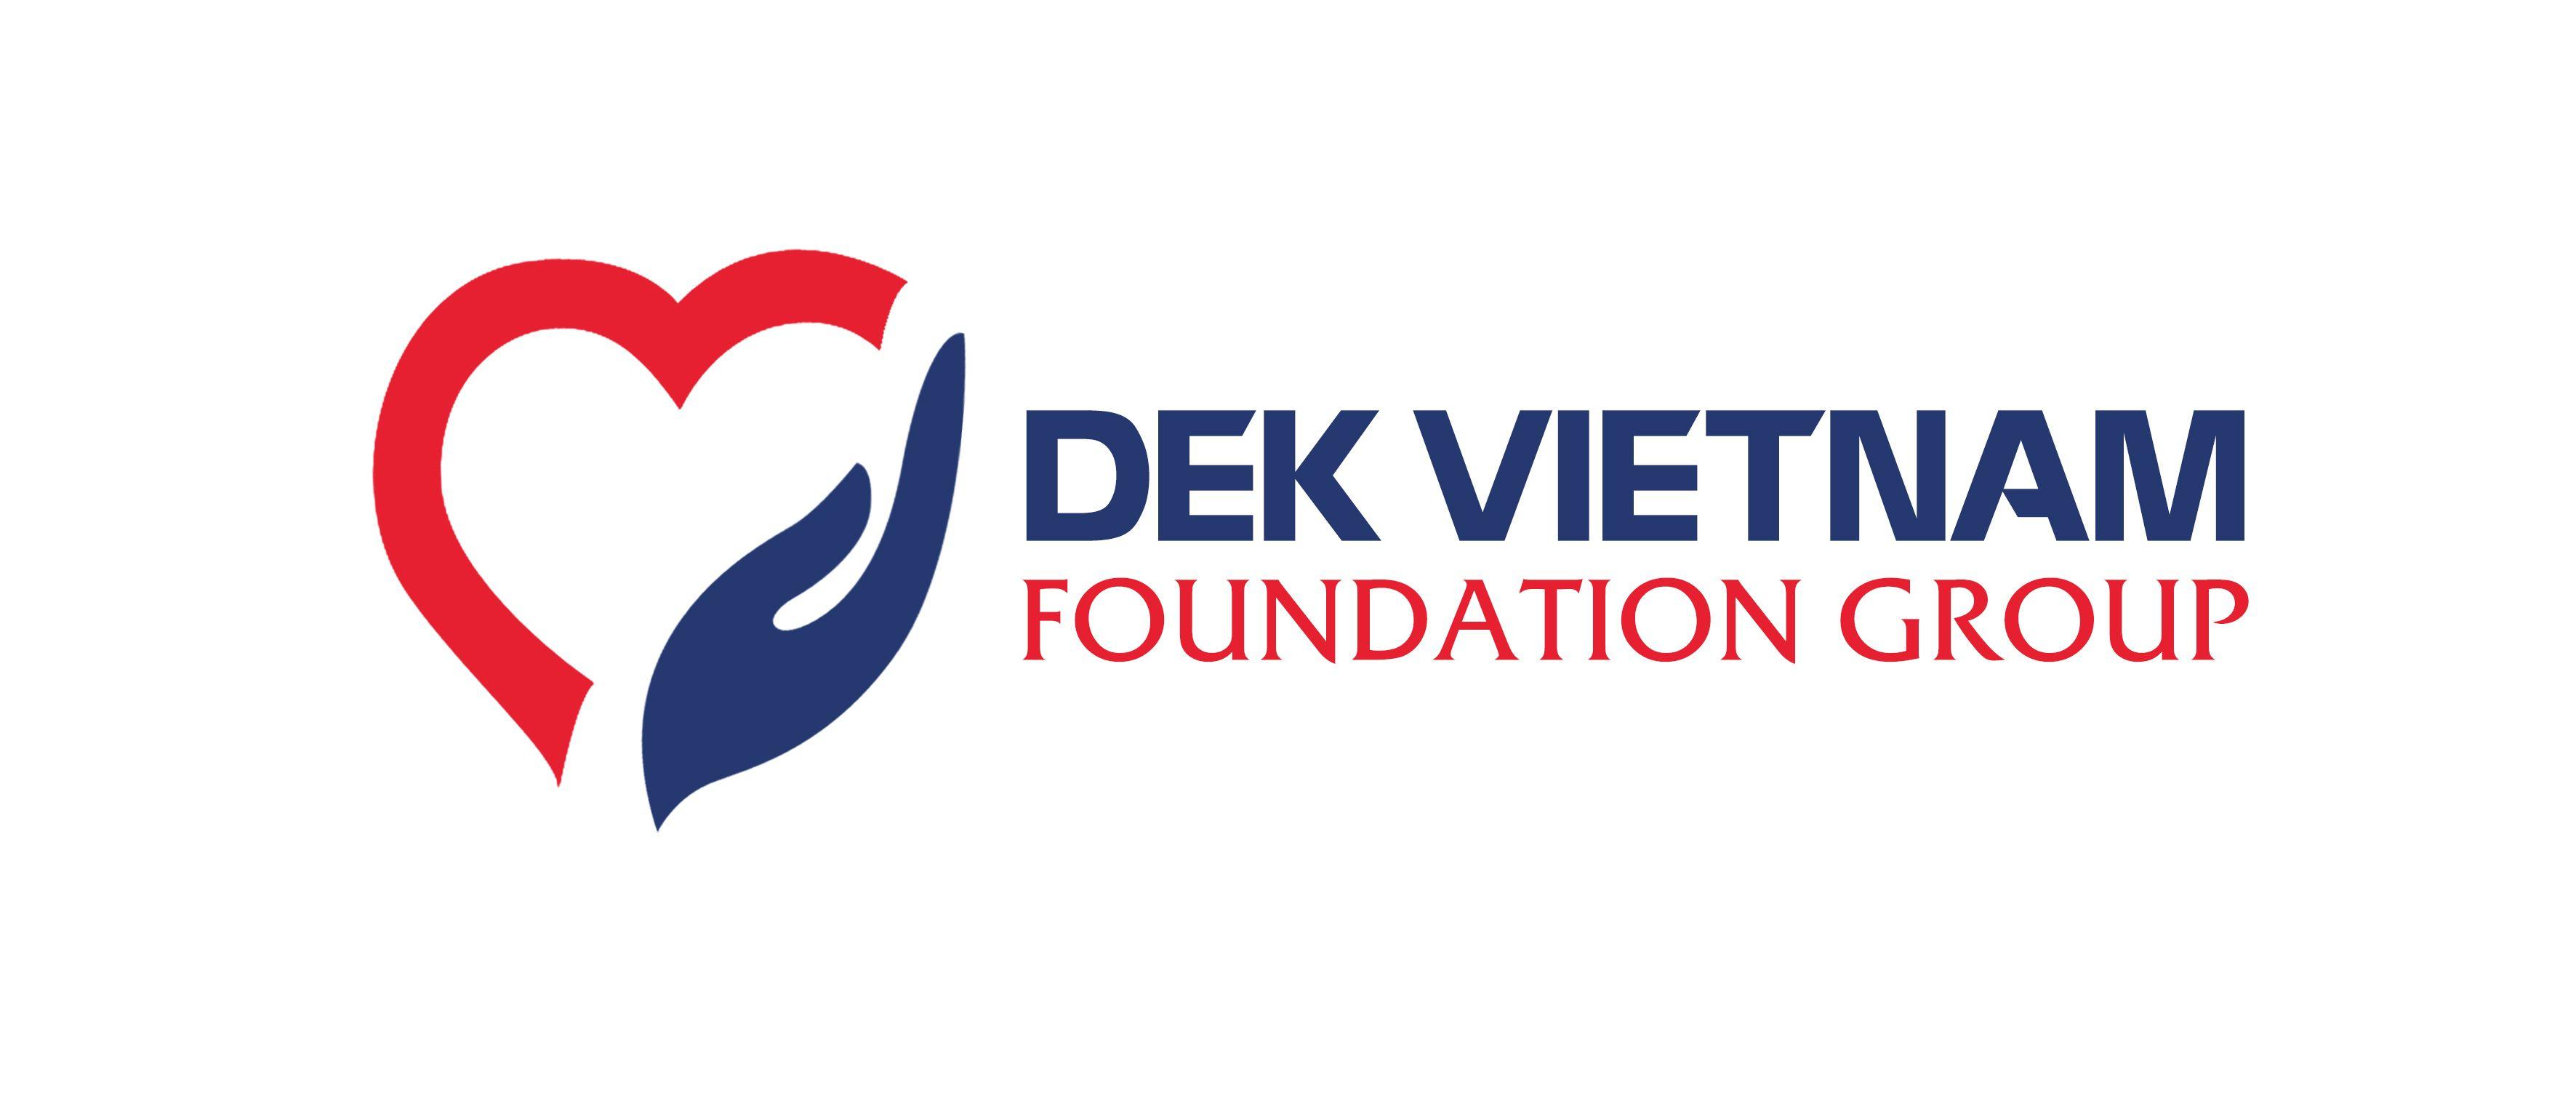 Foundation Group Logo - Foundation